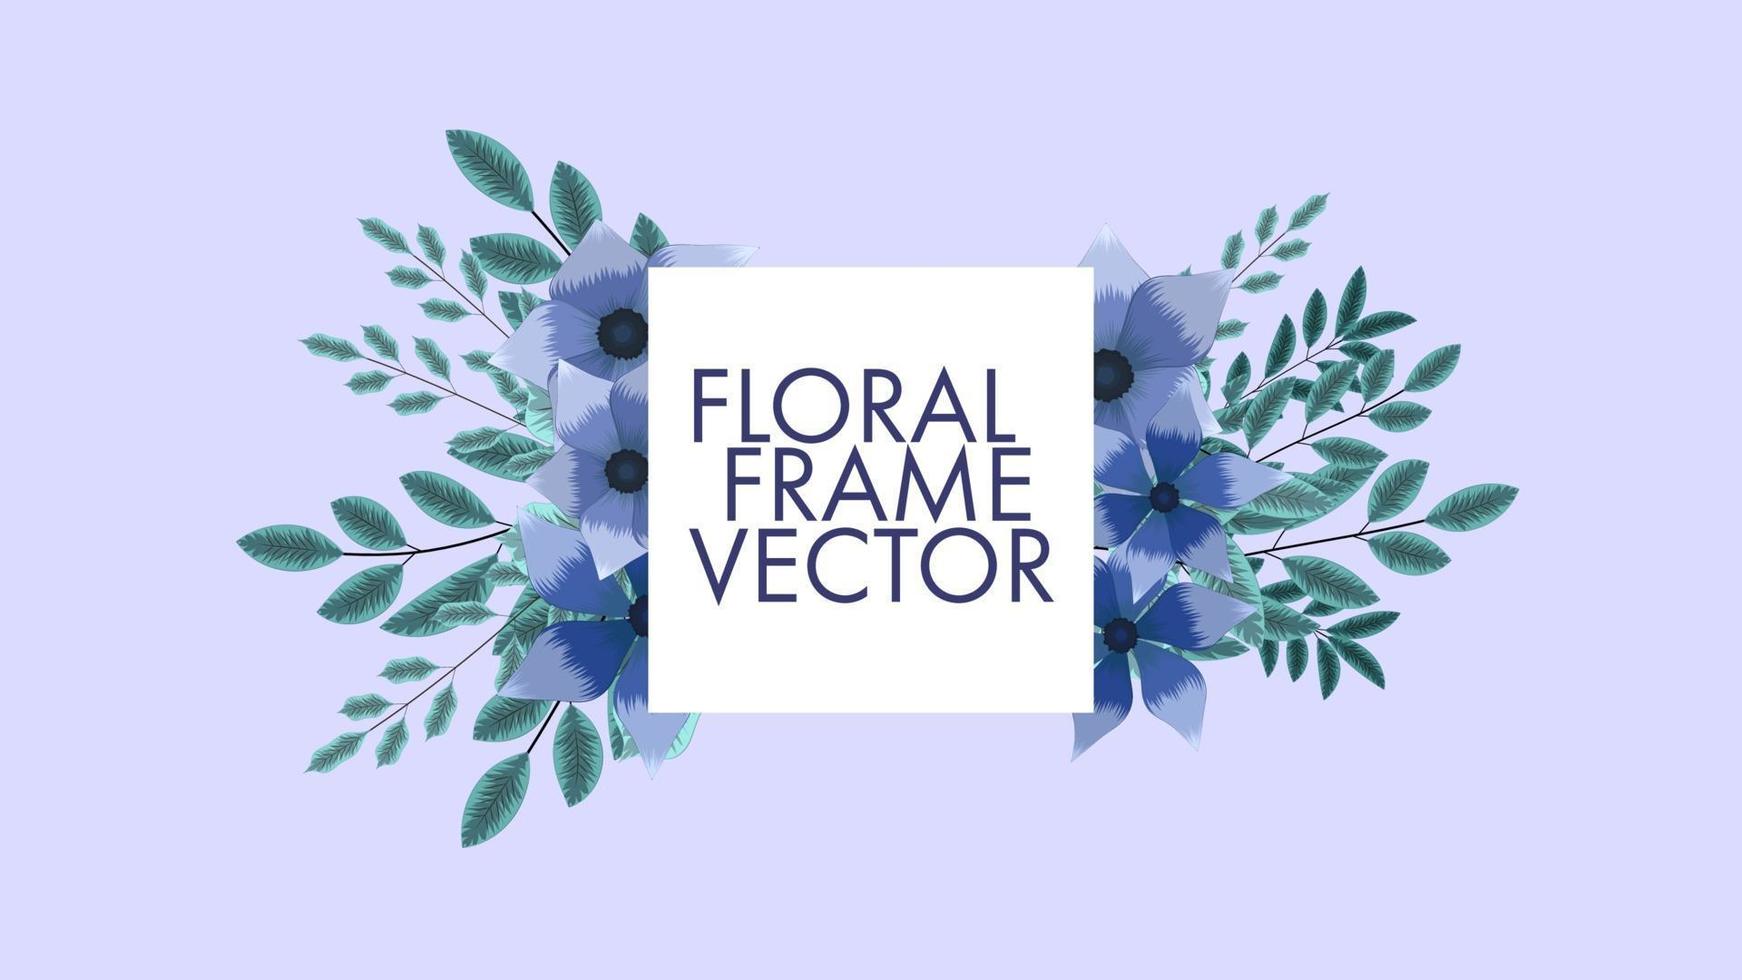 El precio de venta de la etiqueta de fondo de los marcos florales coloridos lujosos invita vector